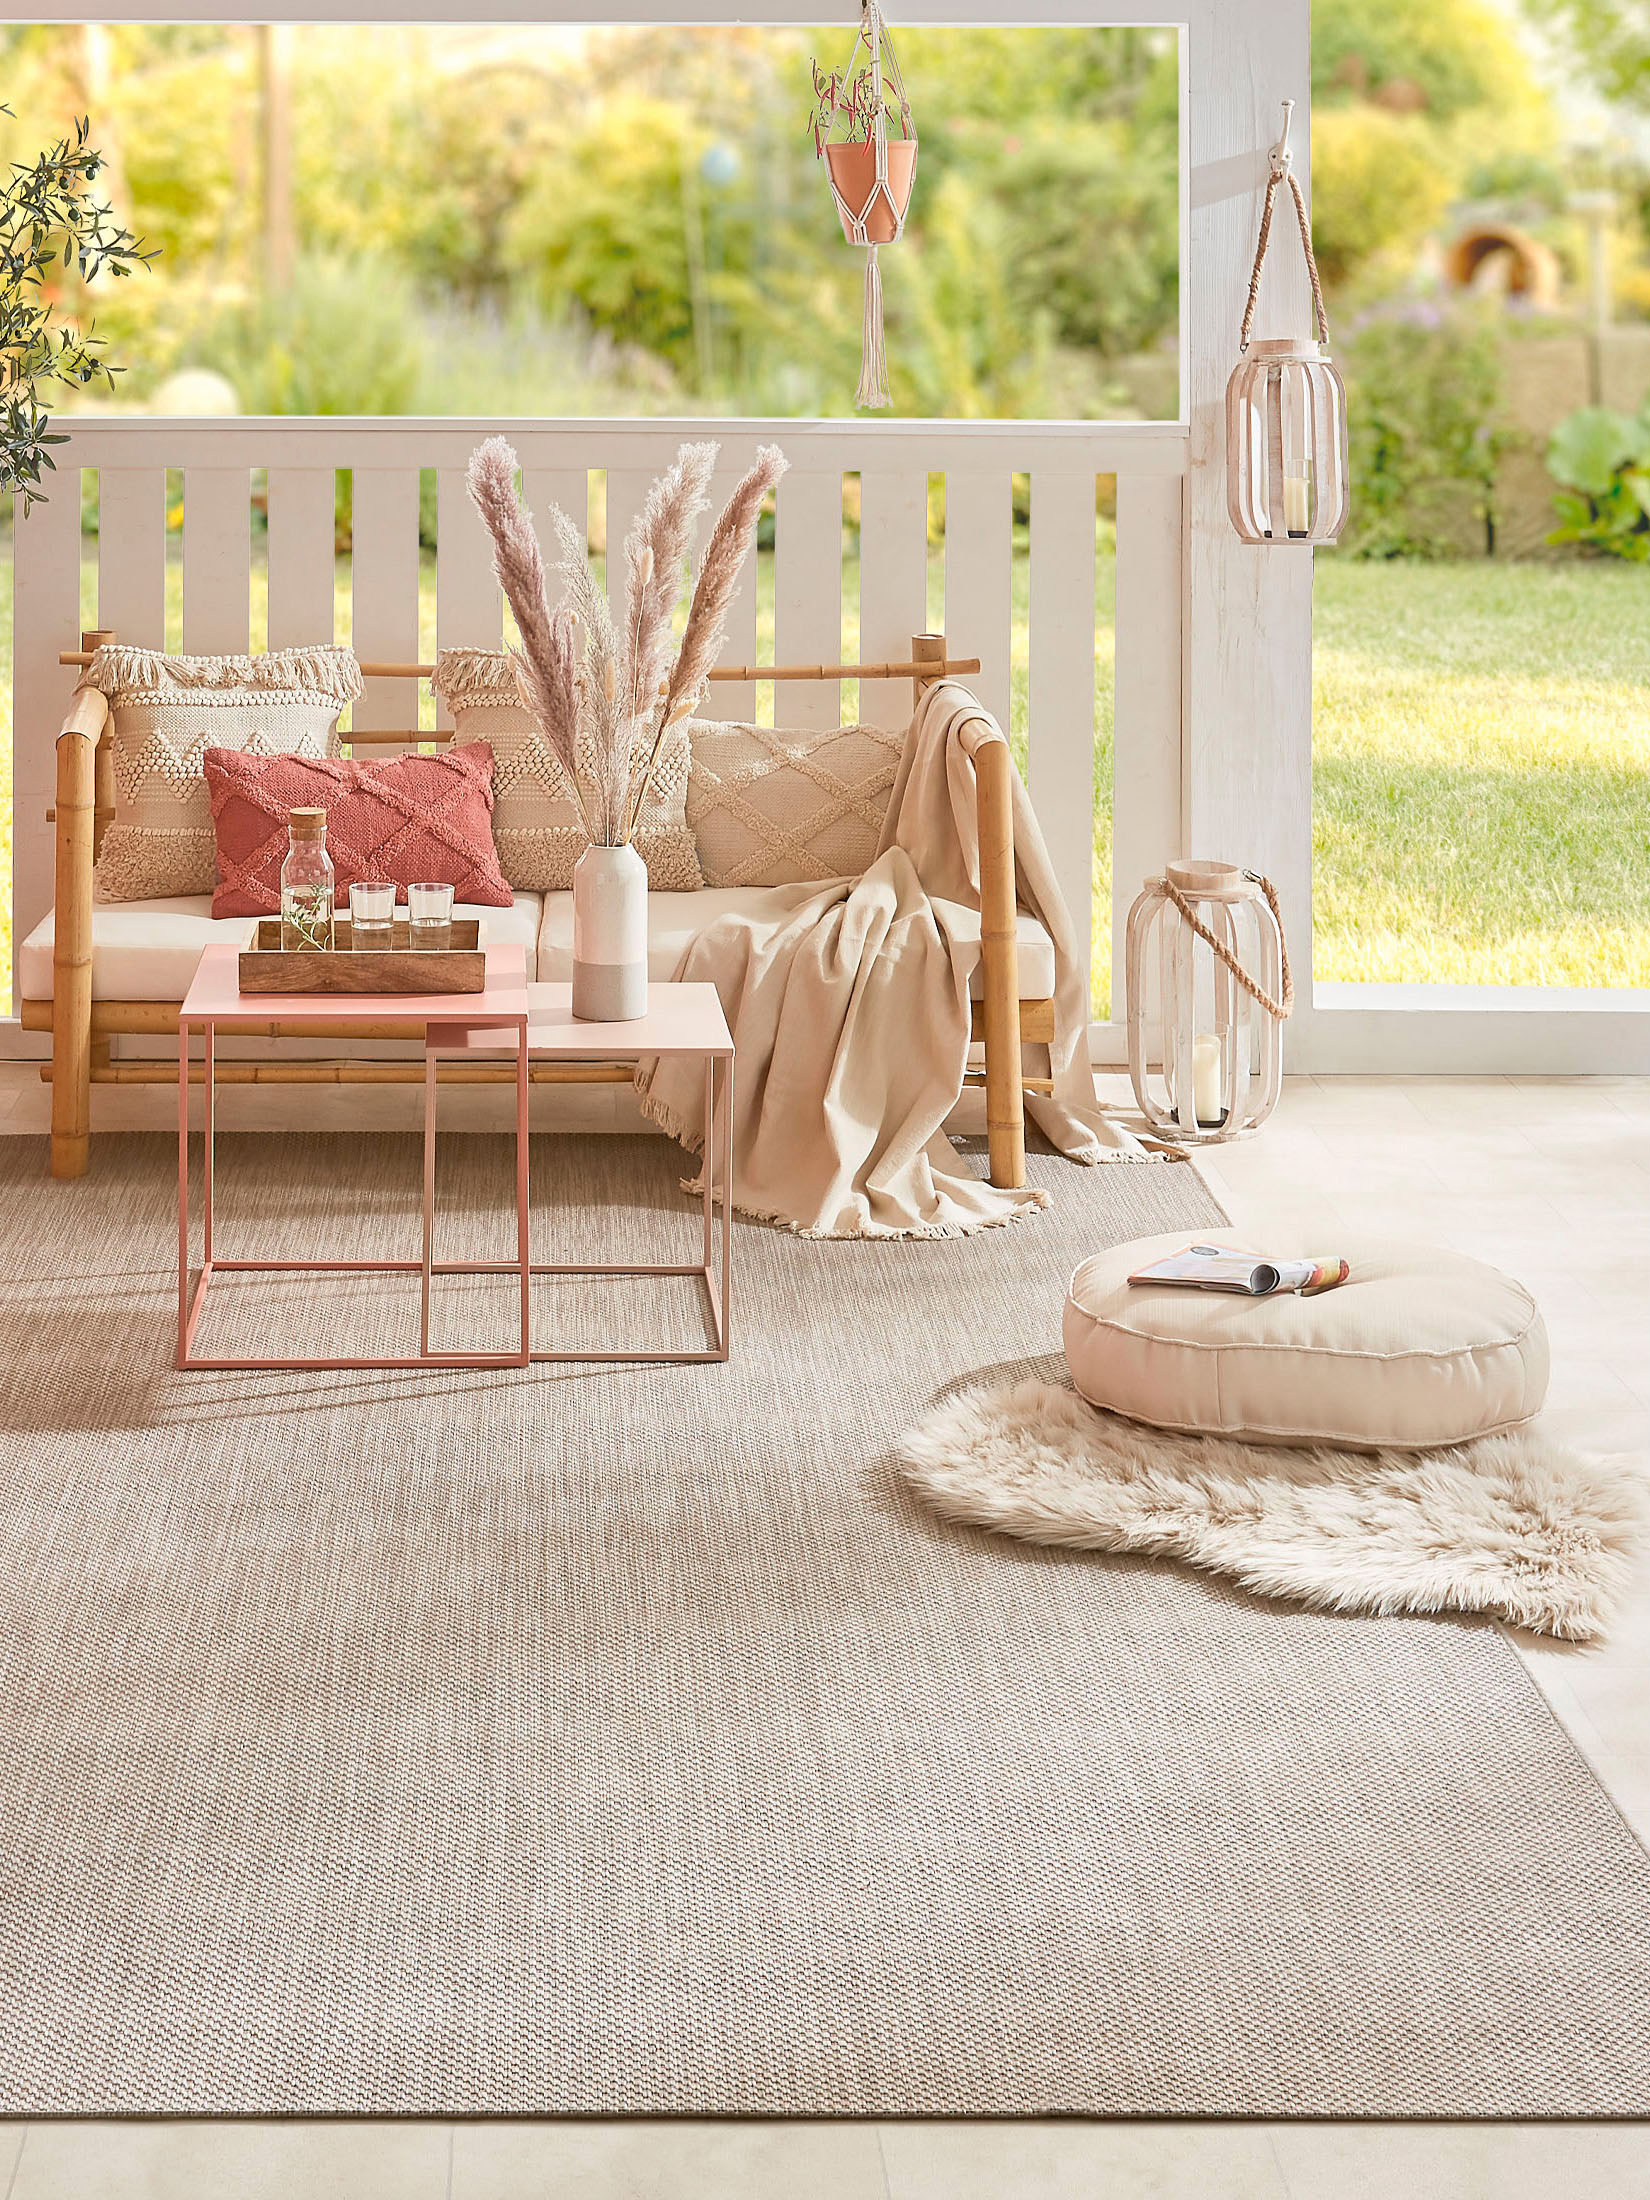 Outdoor-Teppiche für Garten, Terrasse & Balkon kaufen